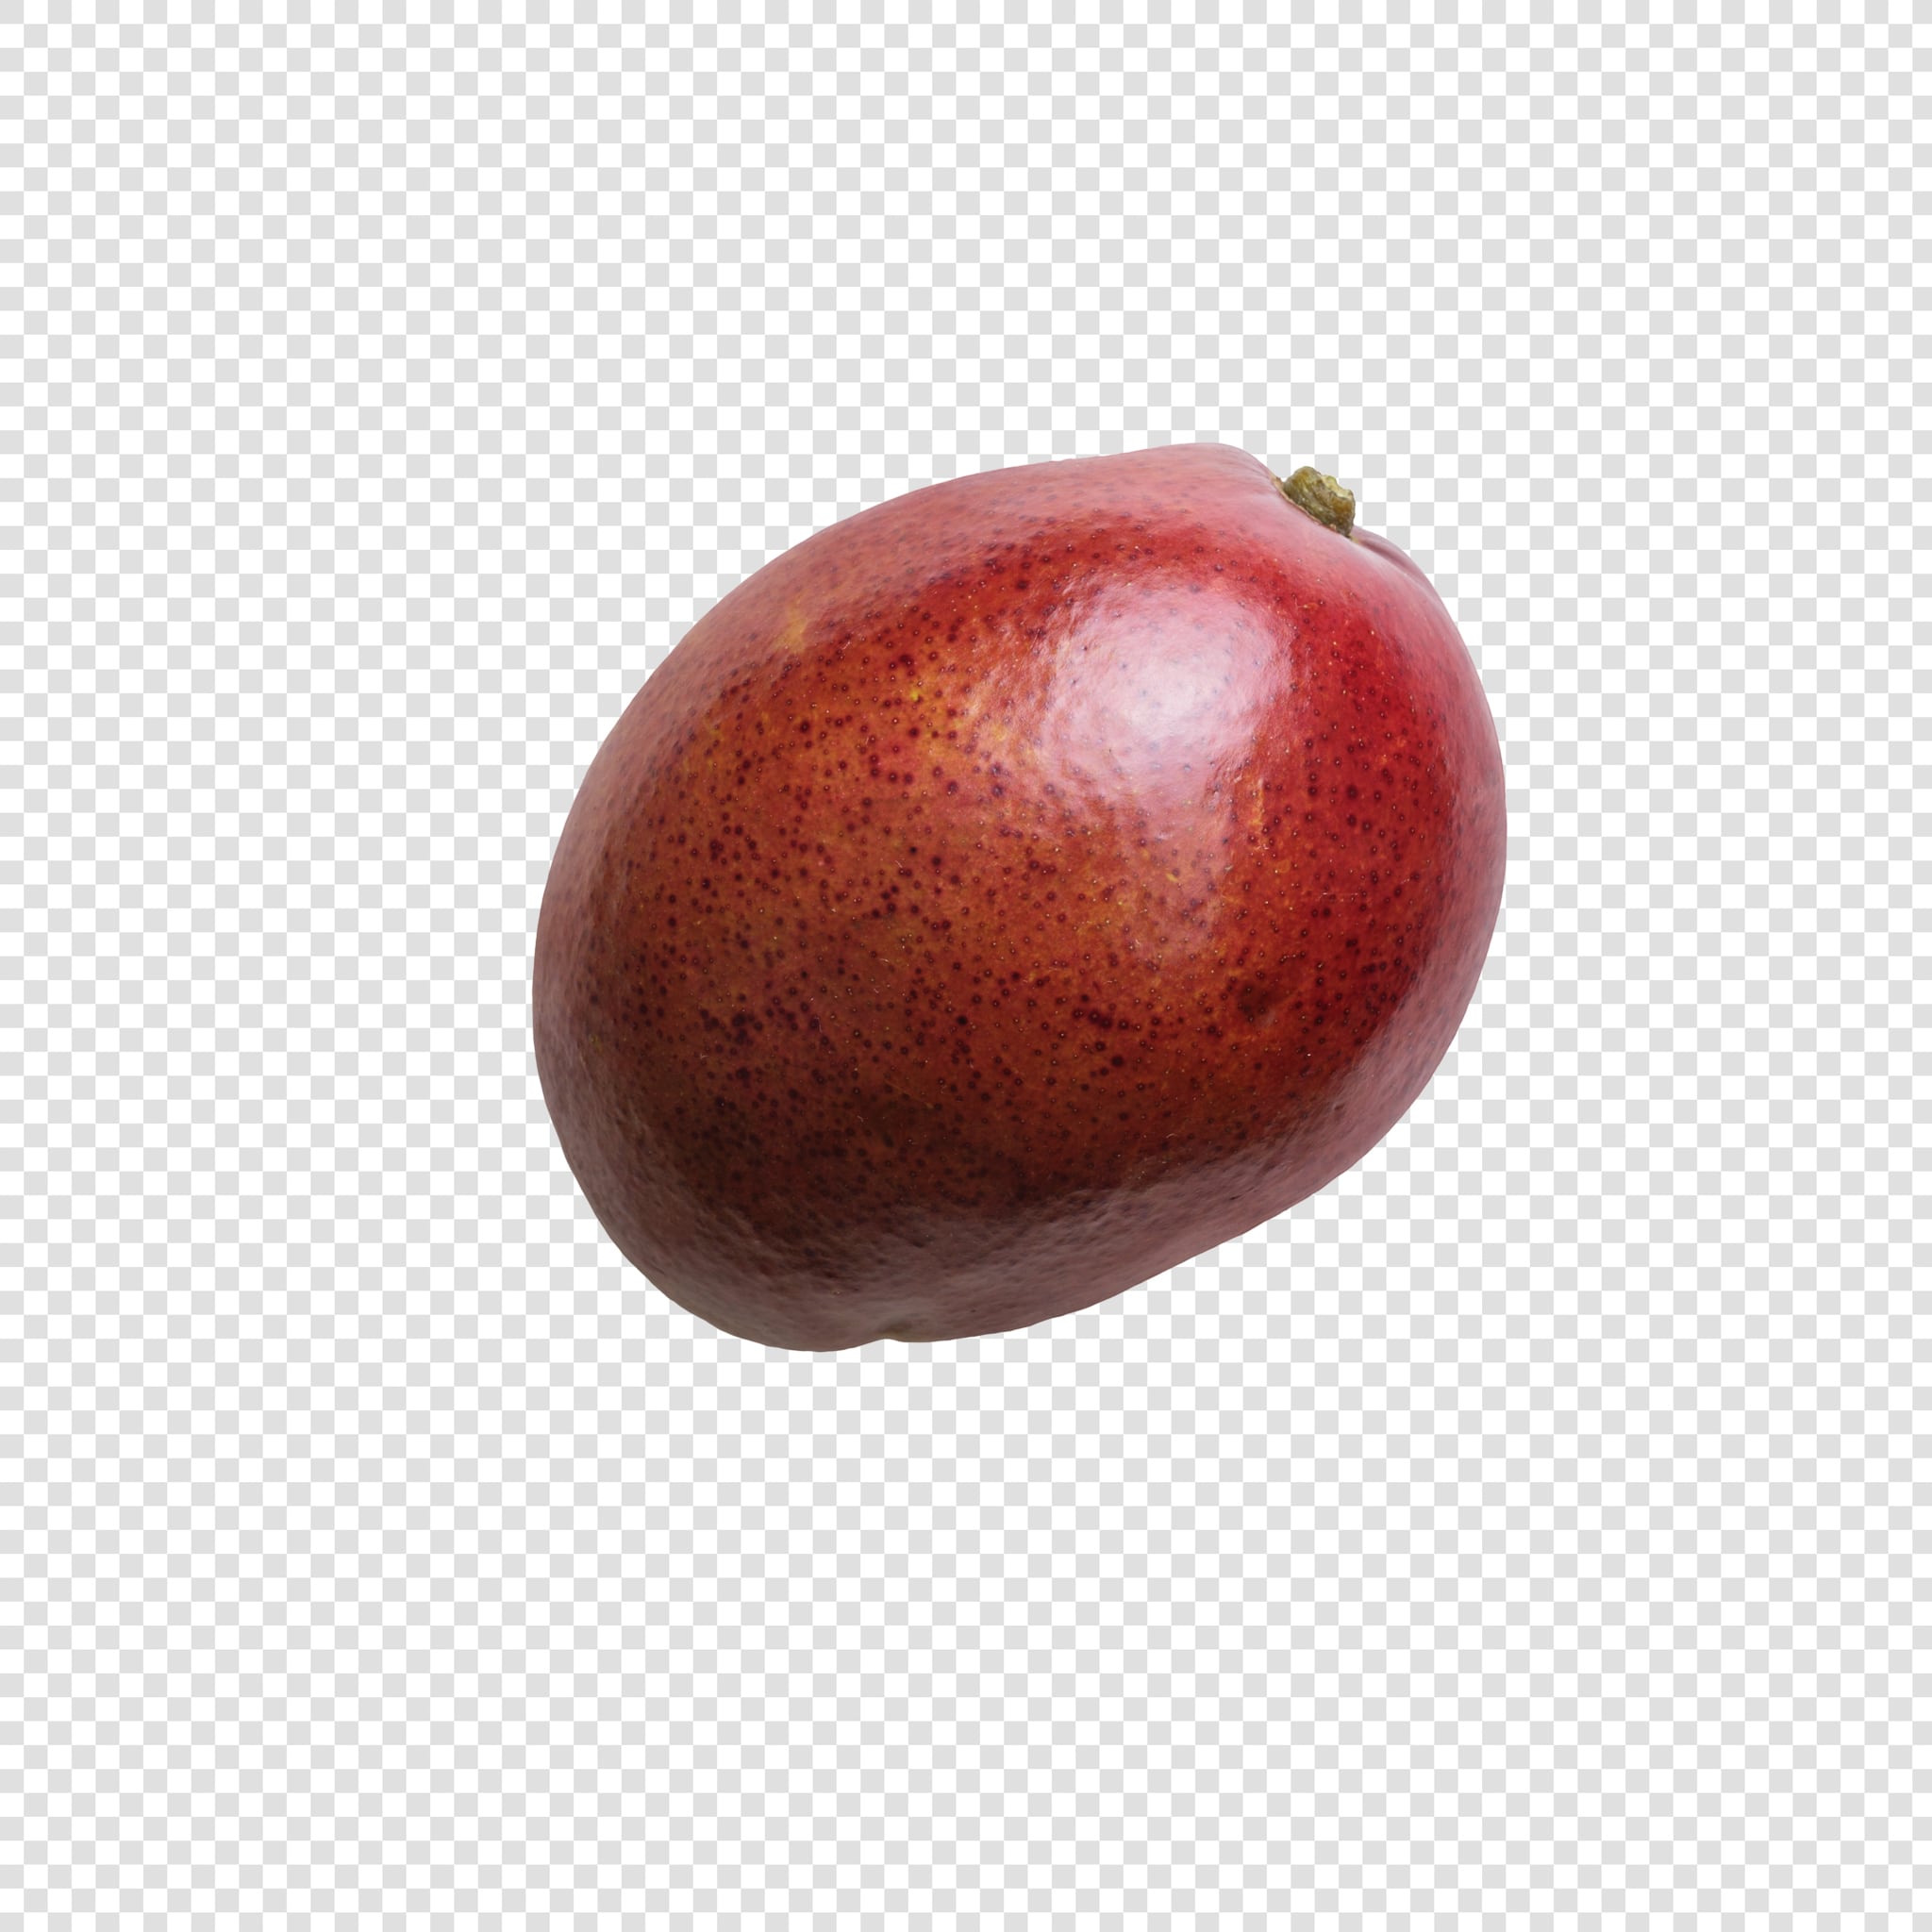 Mango image with transparent background